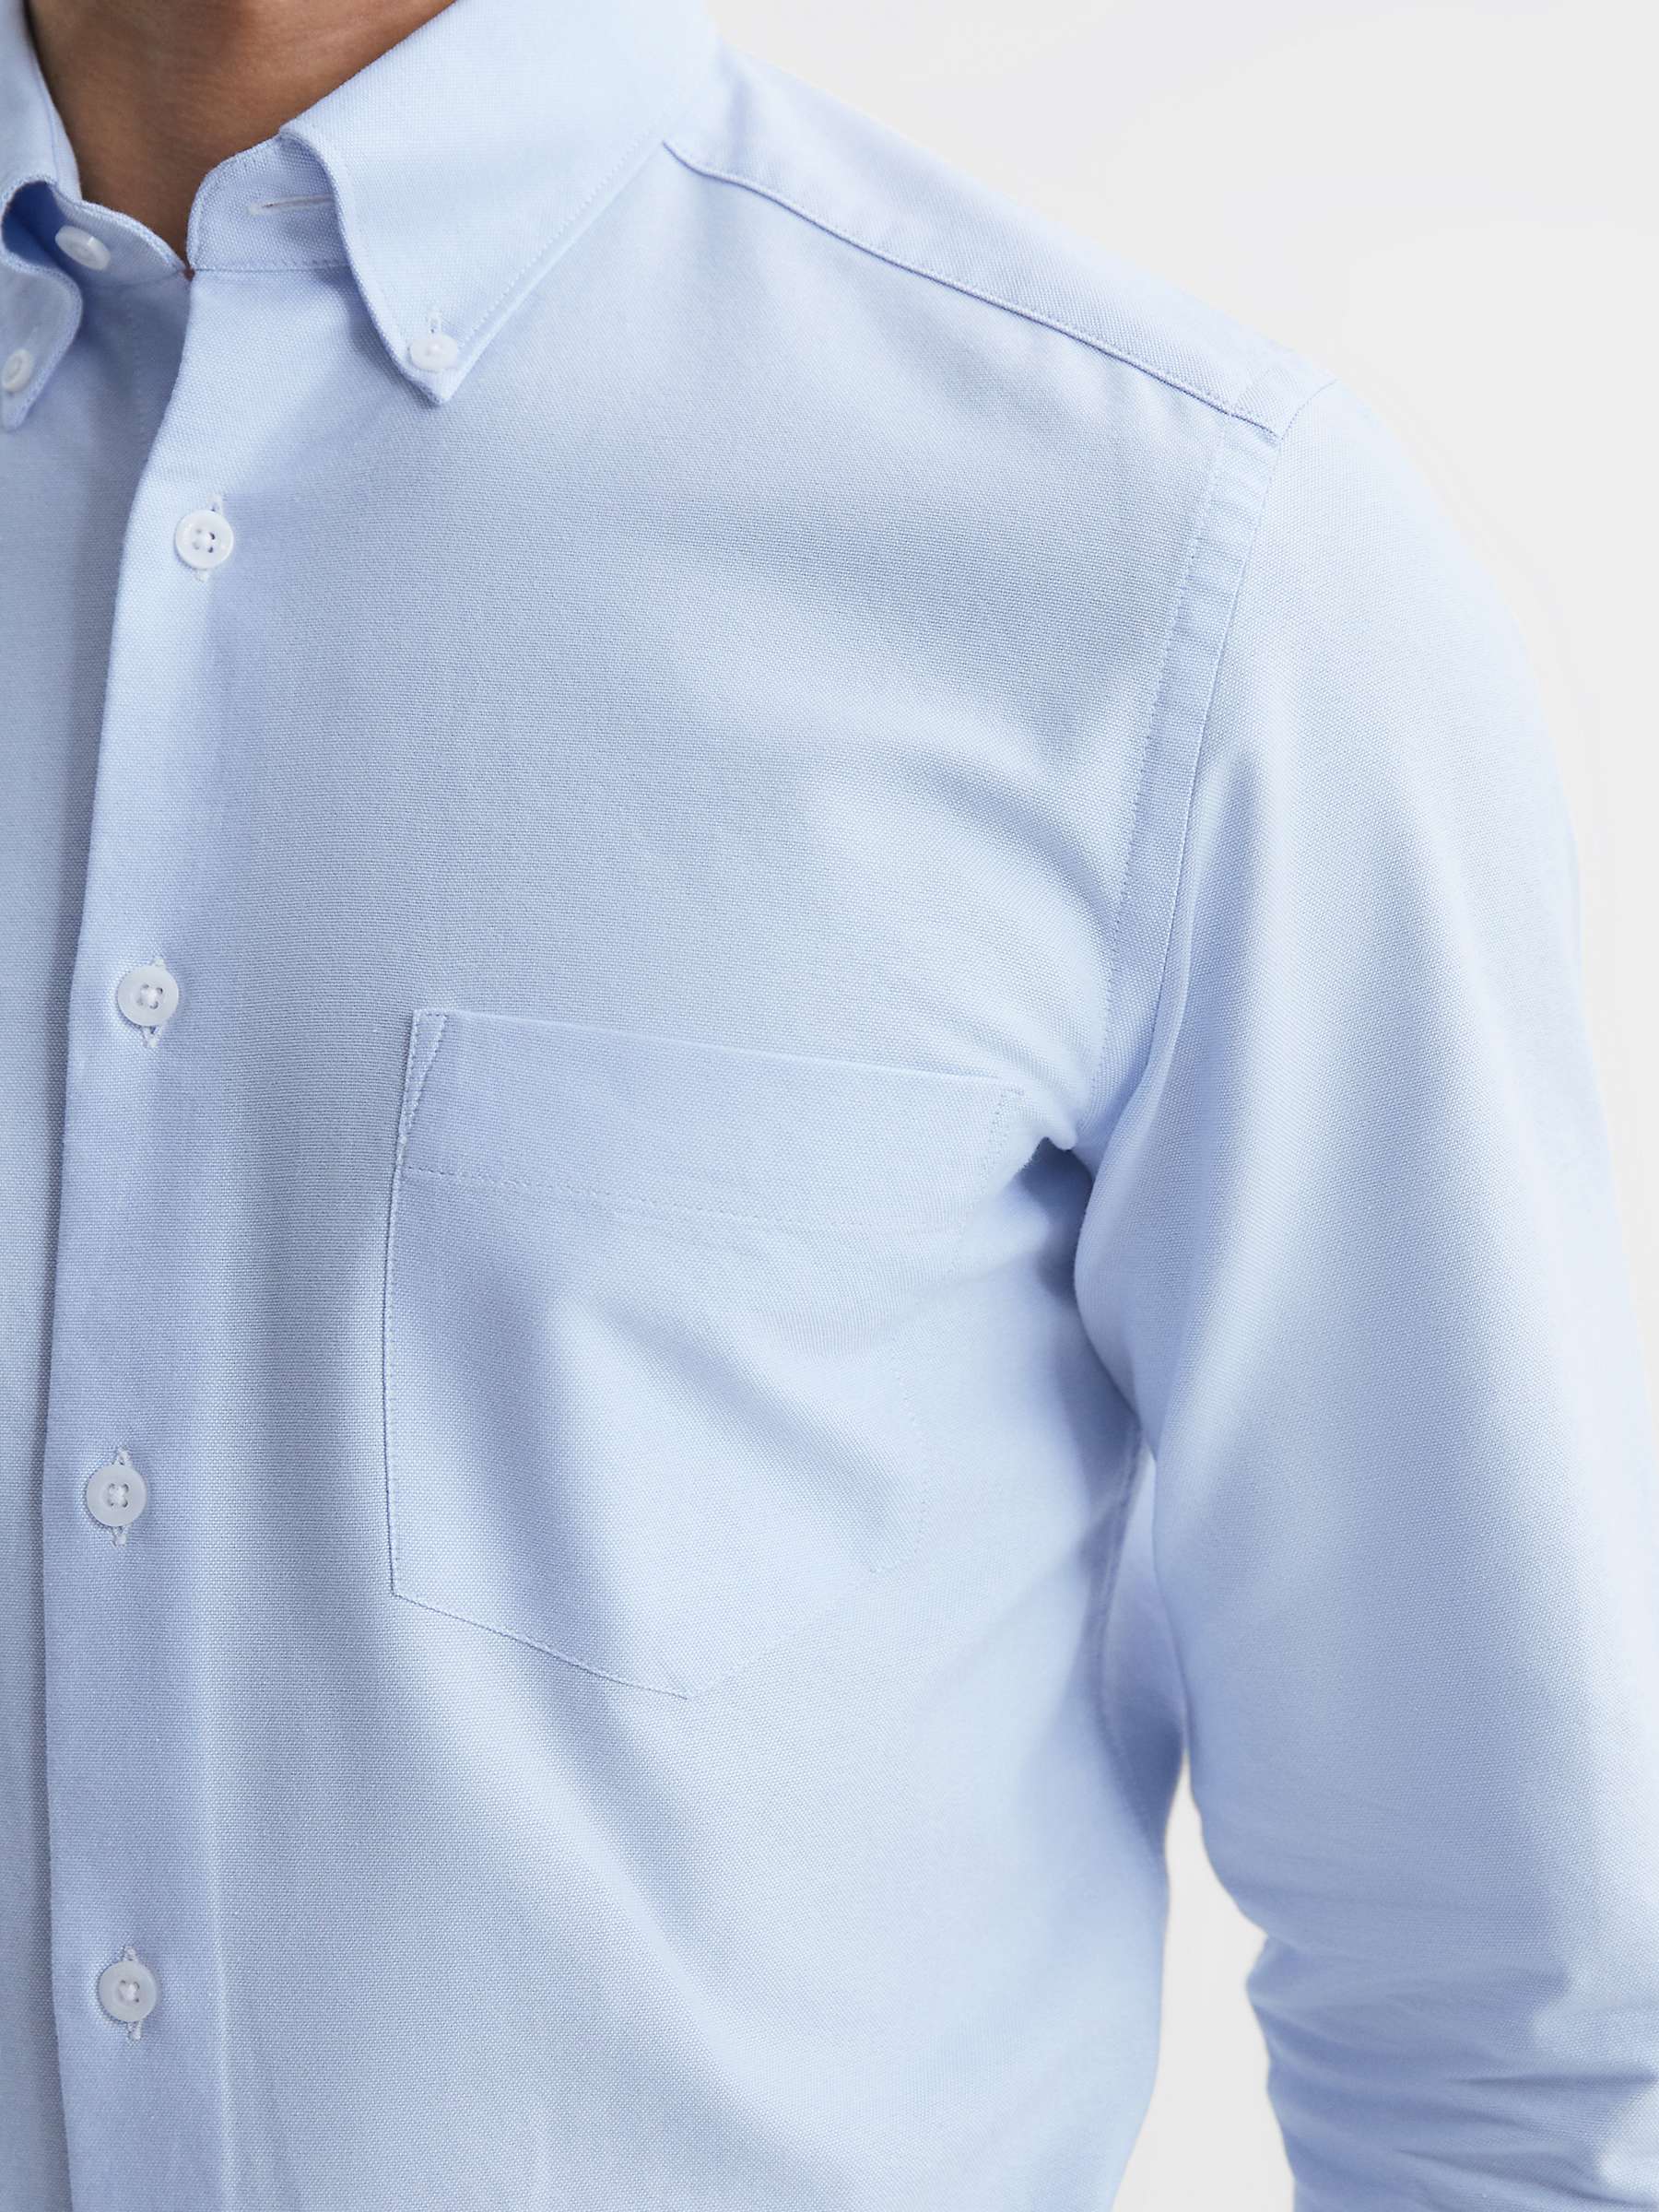 Reiss Greenwich Long Sleeved Shirt, Soft Blue at John Lewis & Partners